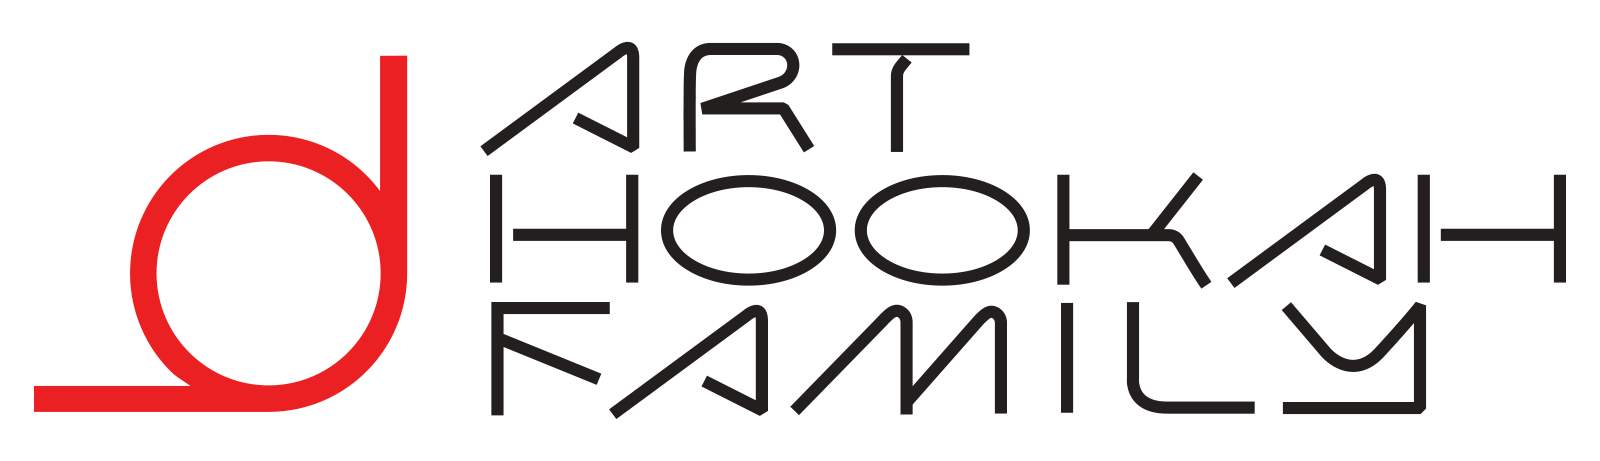 ahf logo